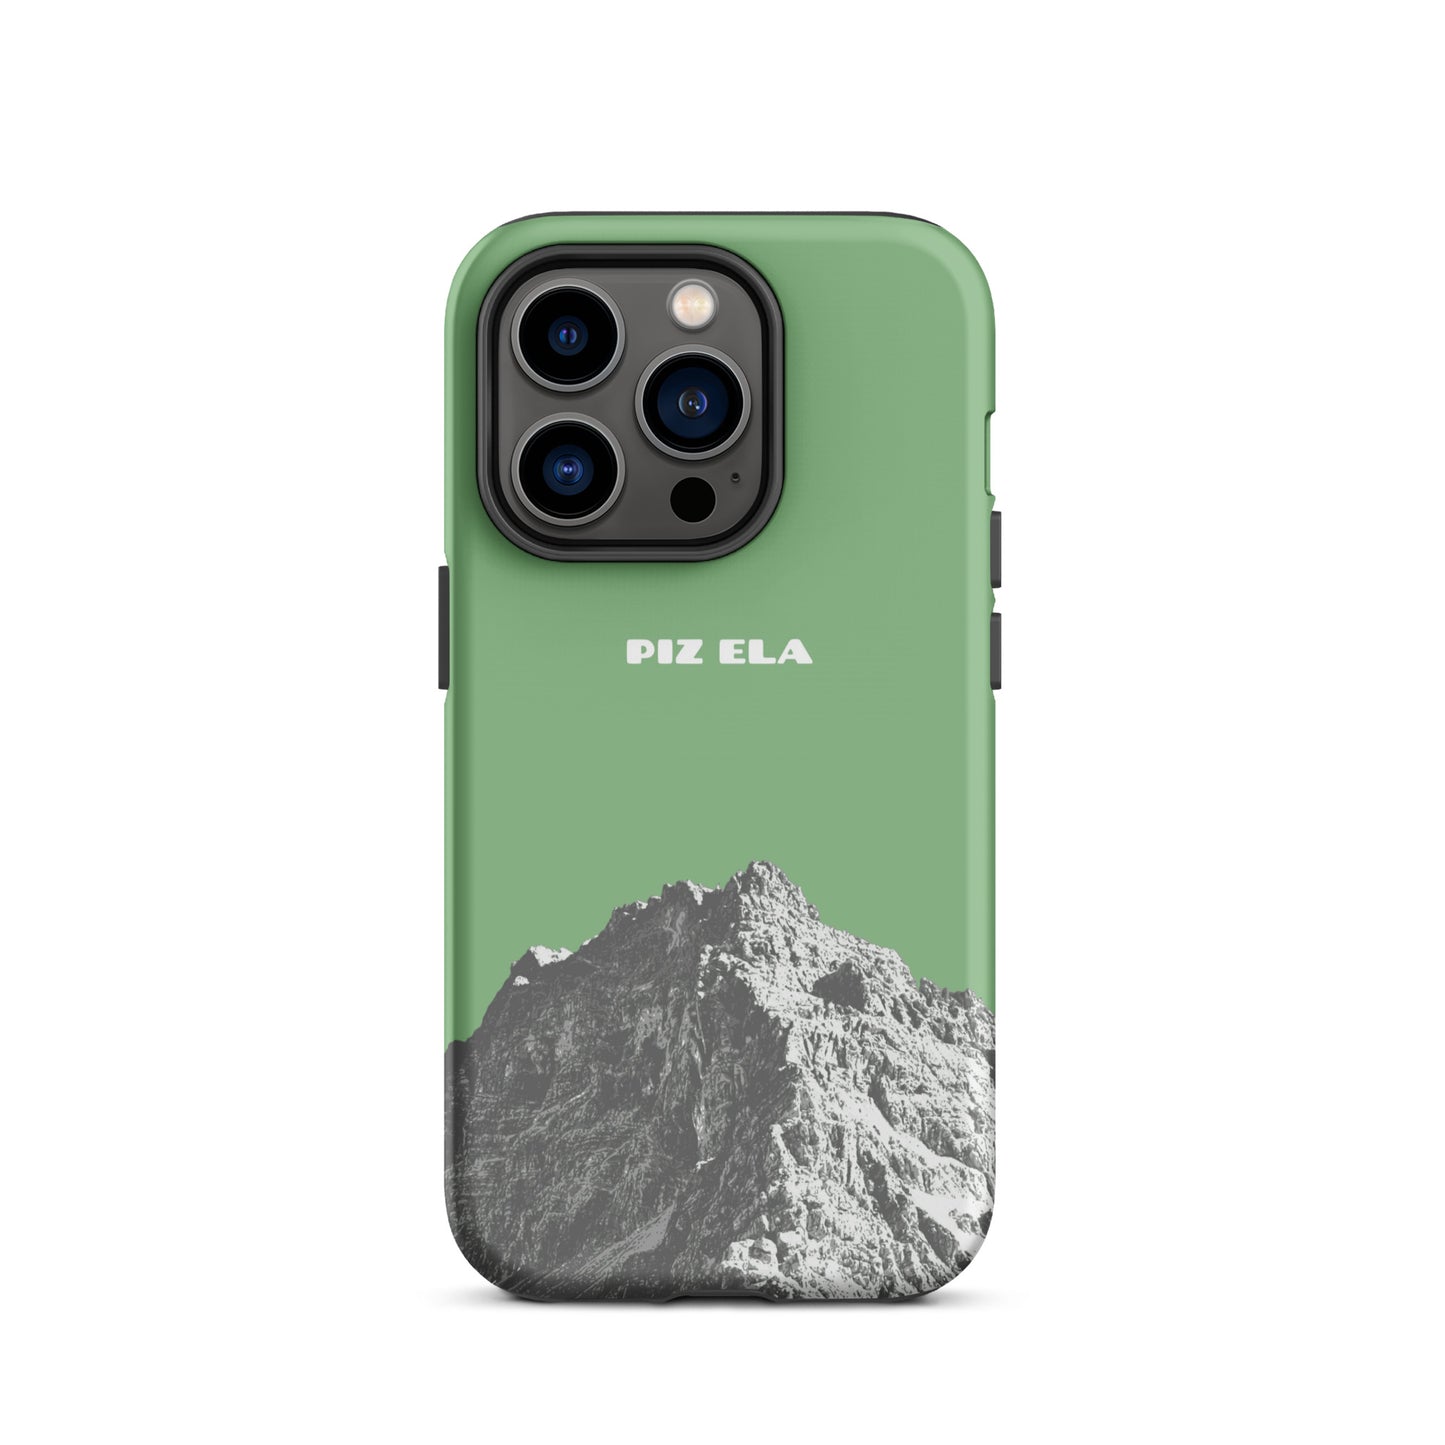 iPhone Case - Piz Ela - Hellgrün